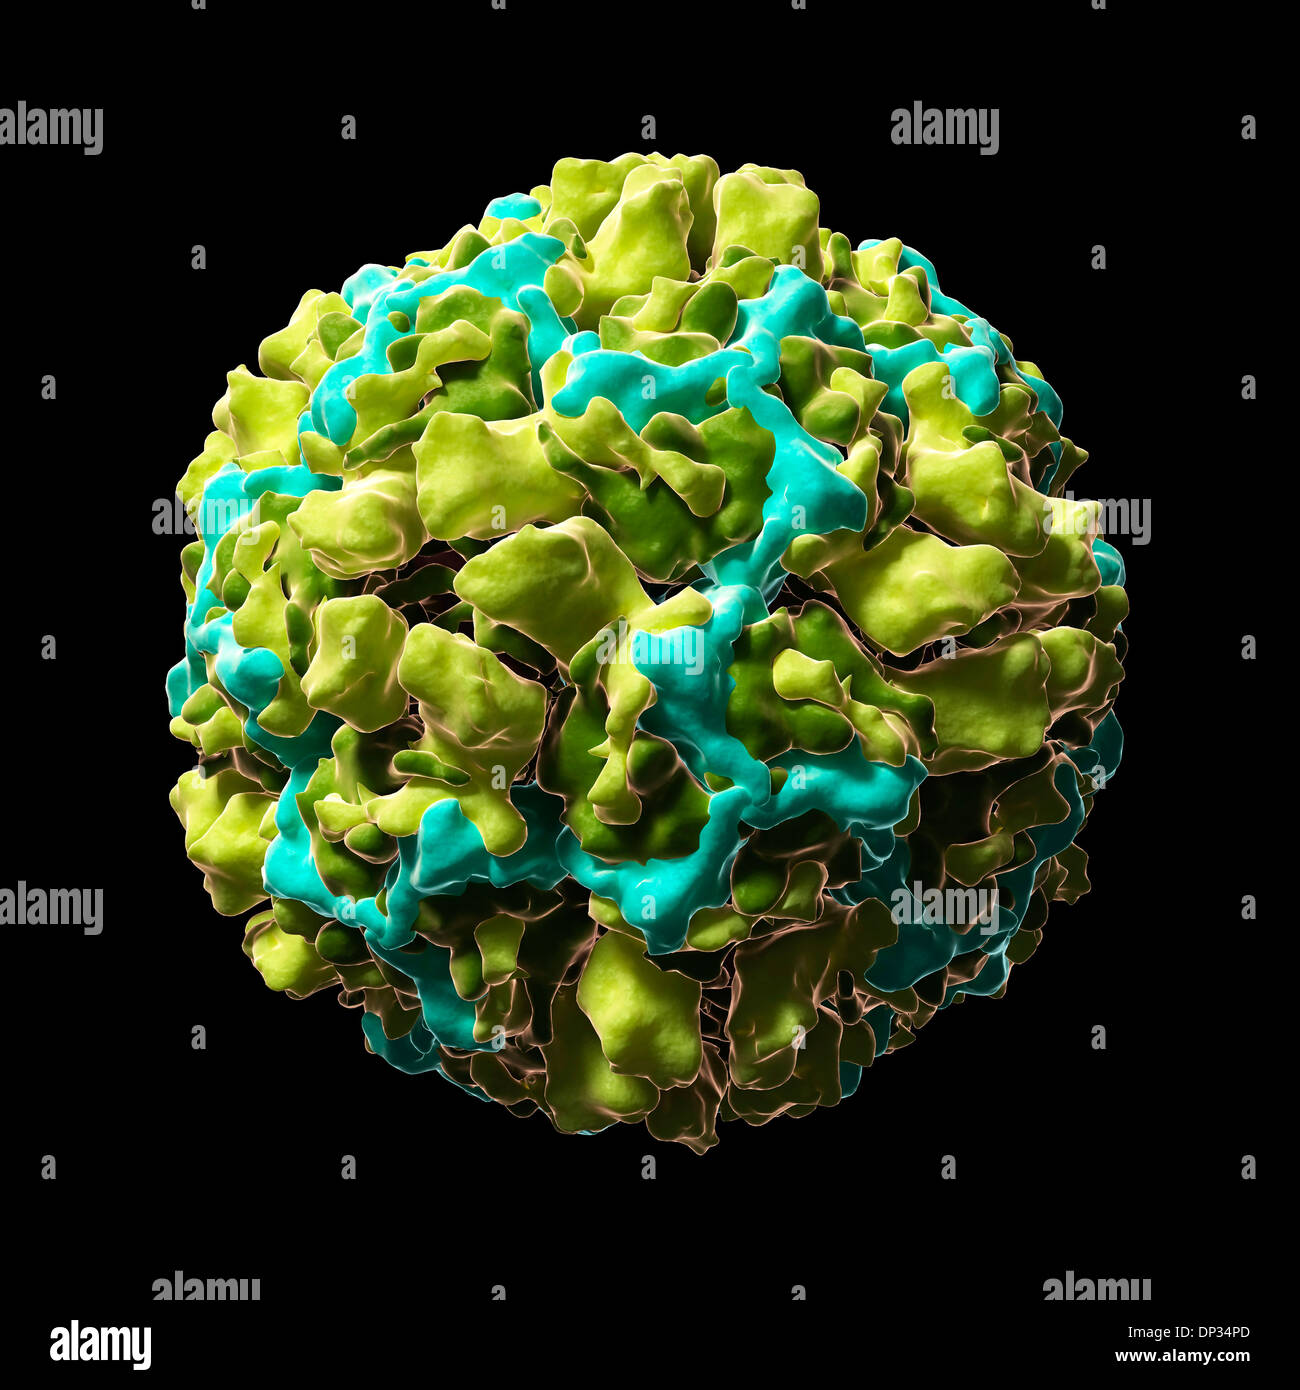 Human rhinovirus 16, artwork Stock Photo